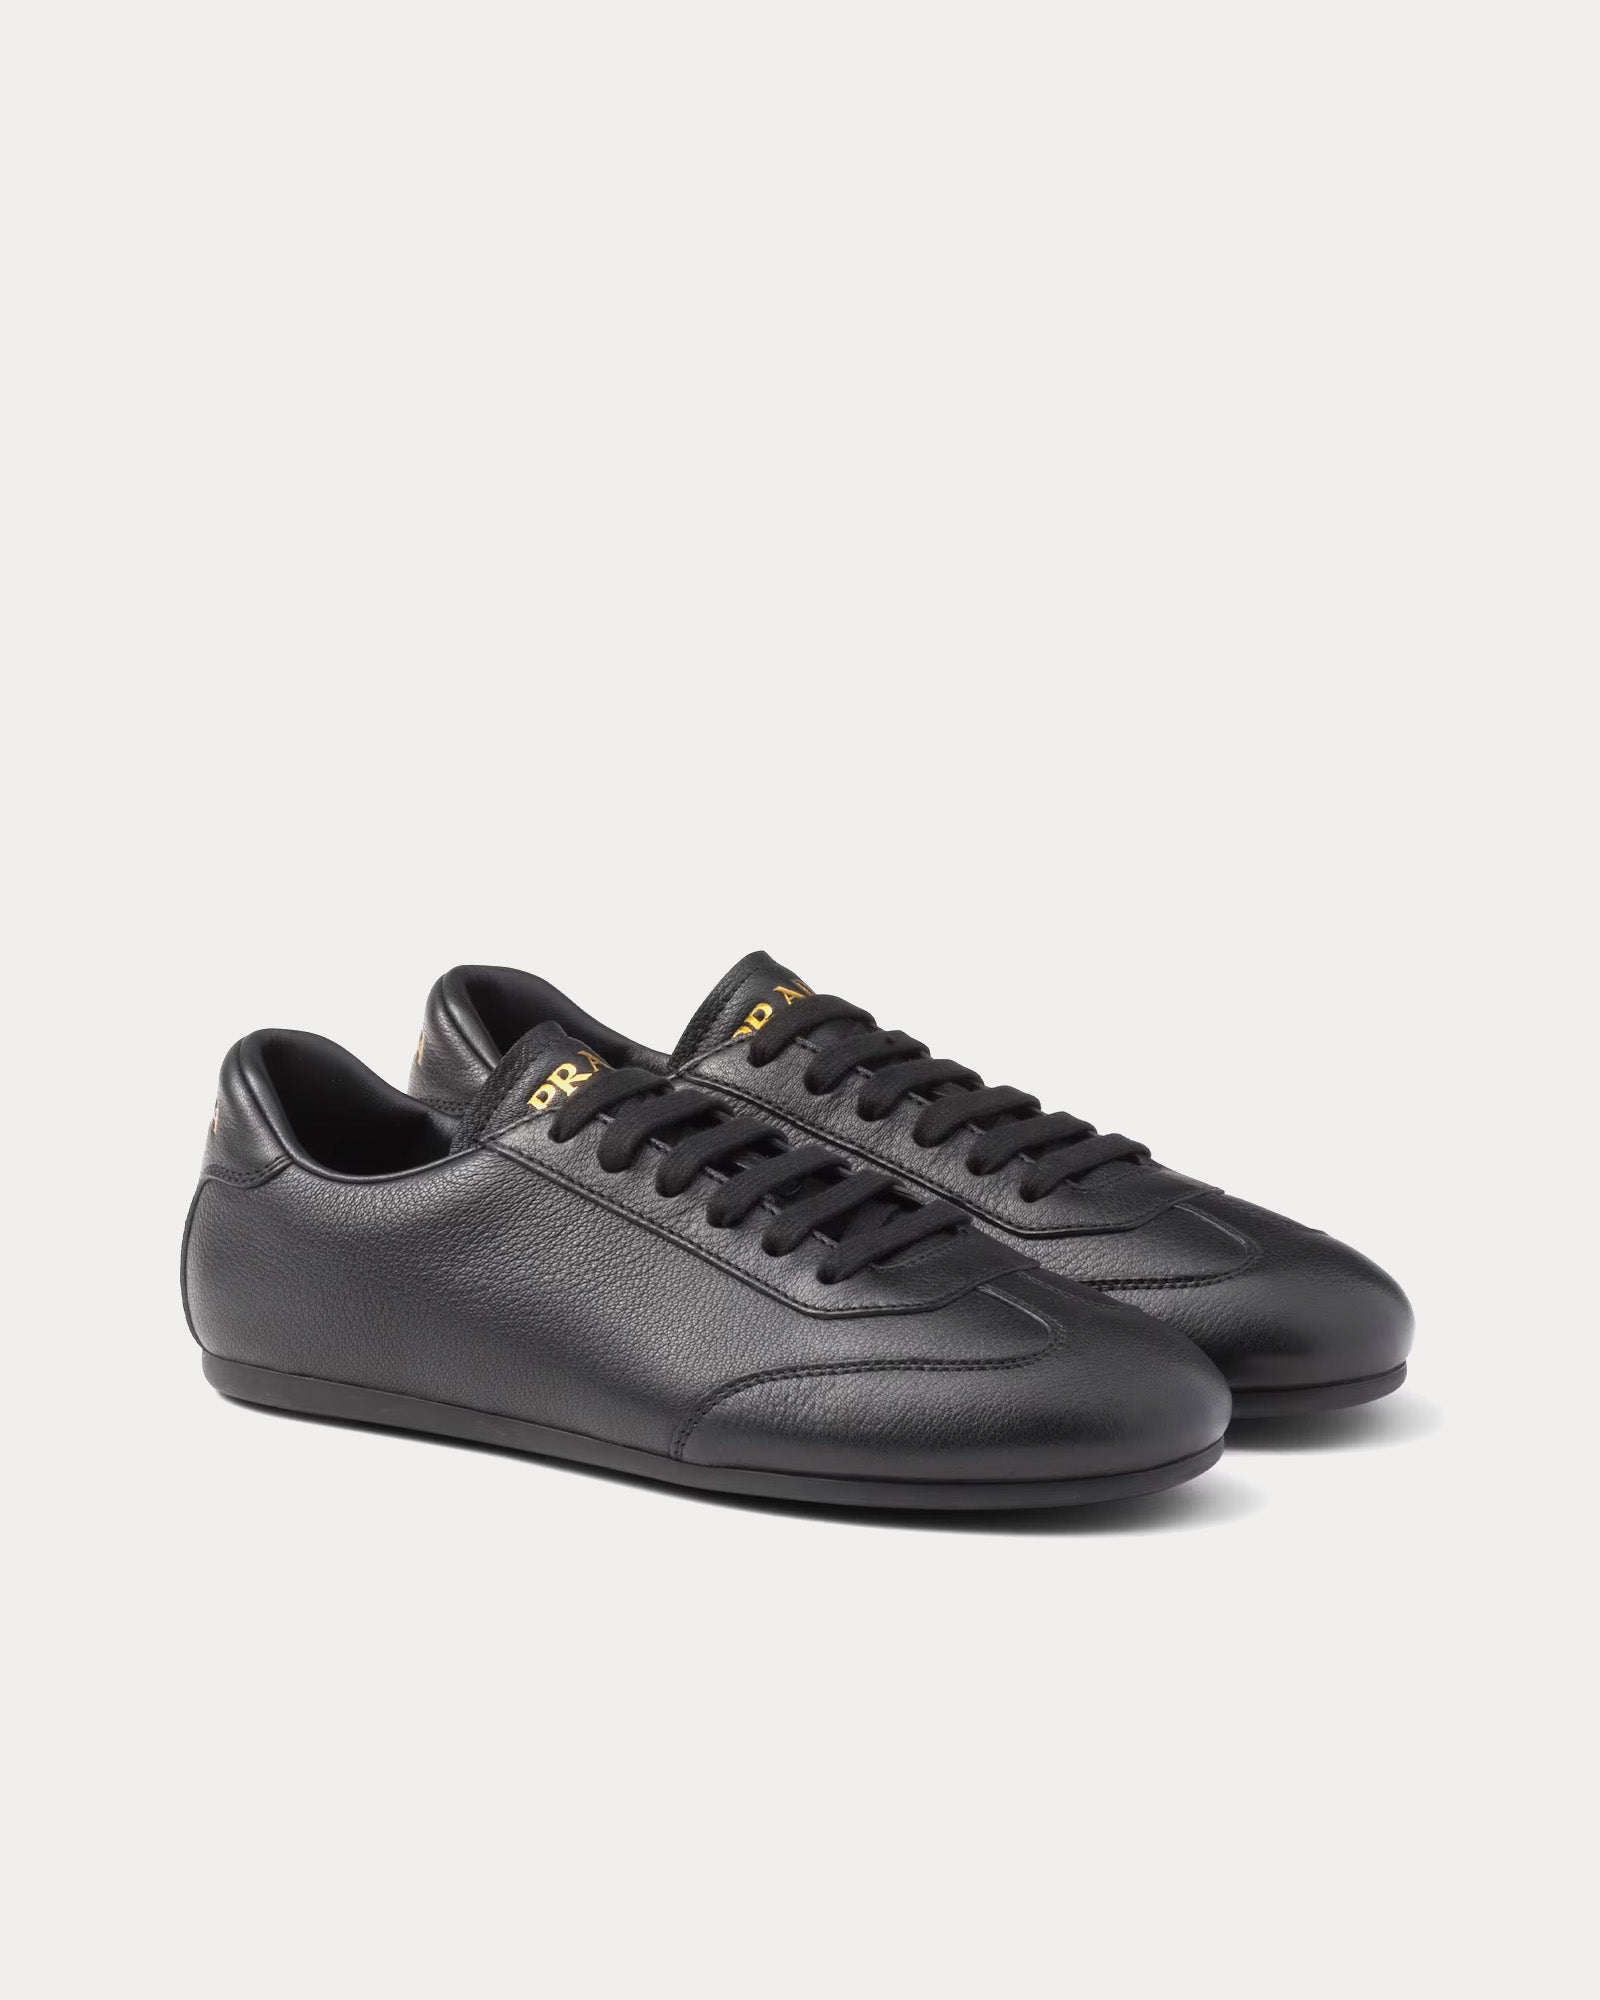 Prada - Deer Leather Black Low Top Sneakers